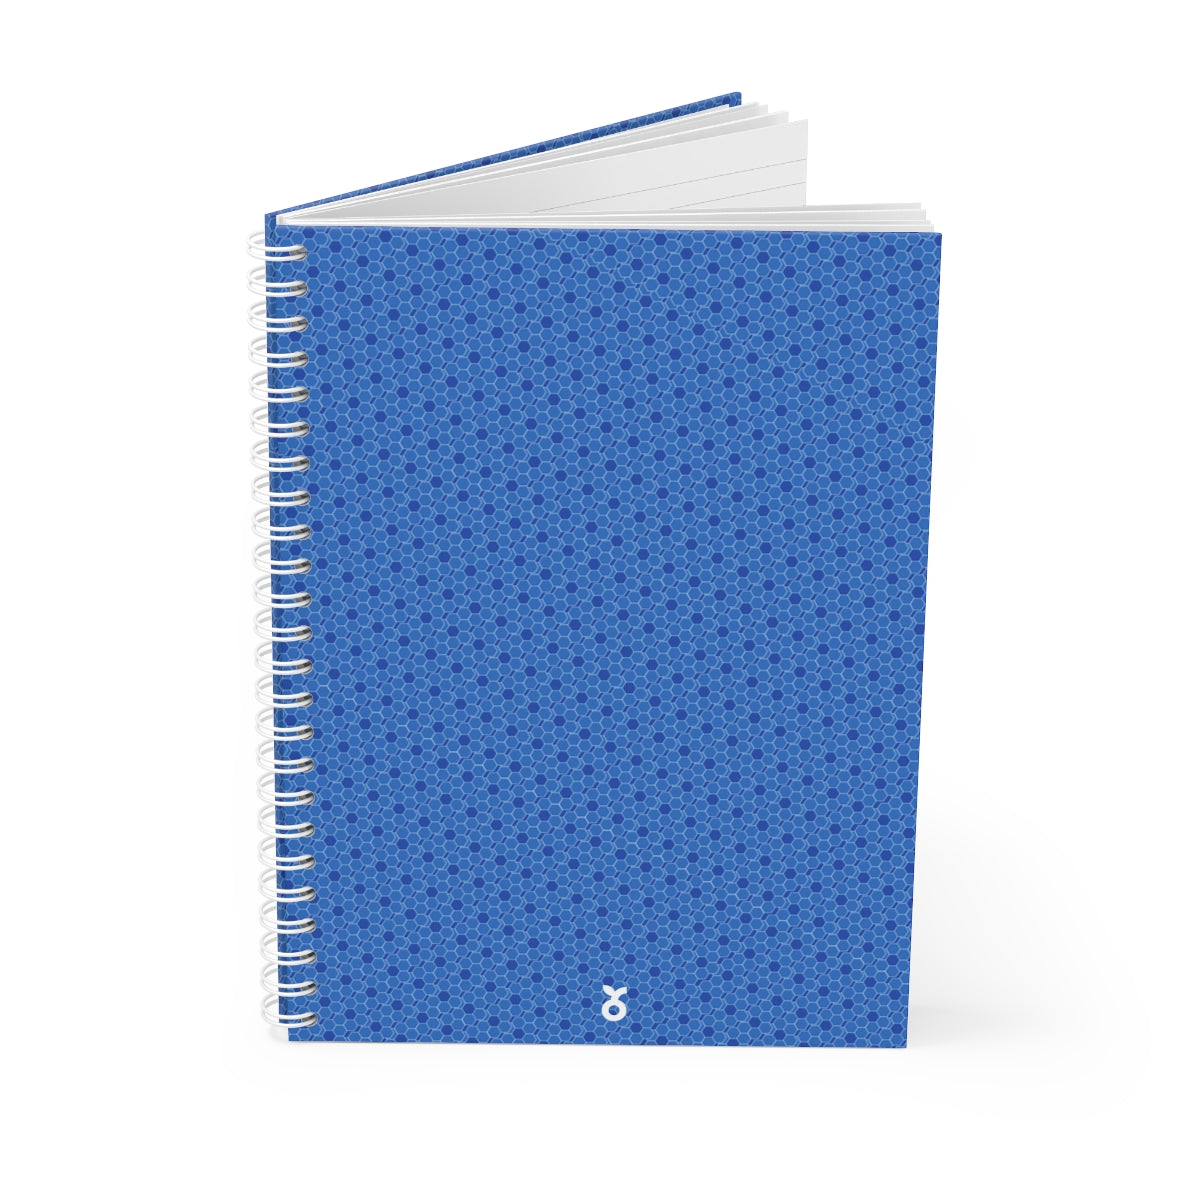 Blue Spiral Notebook